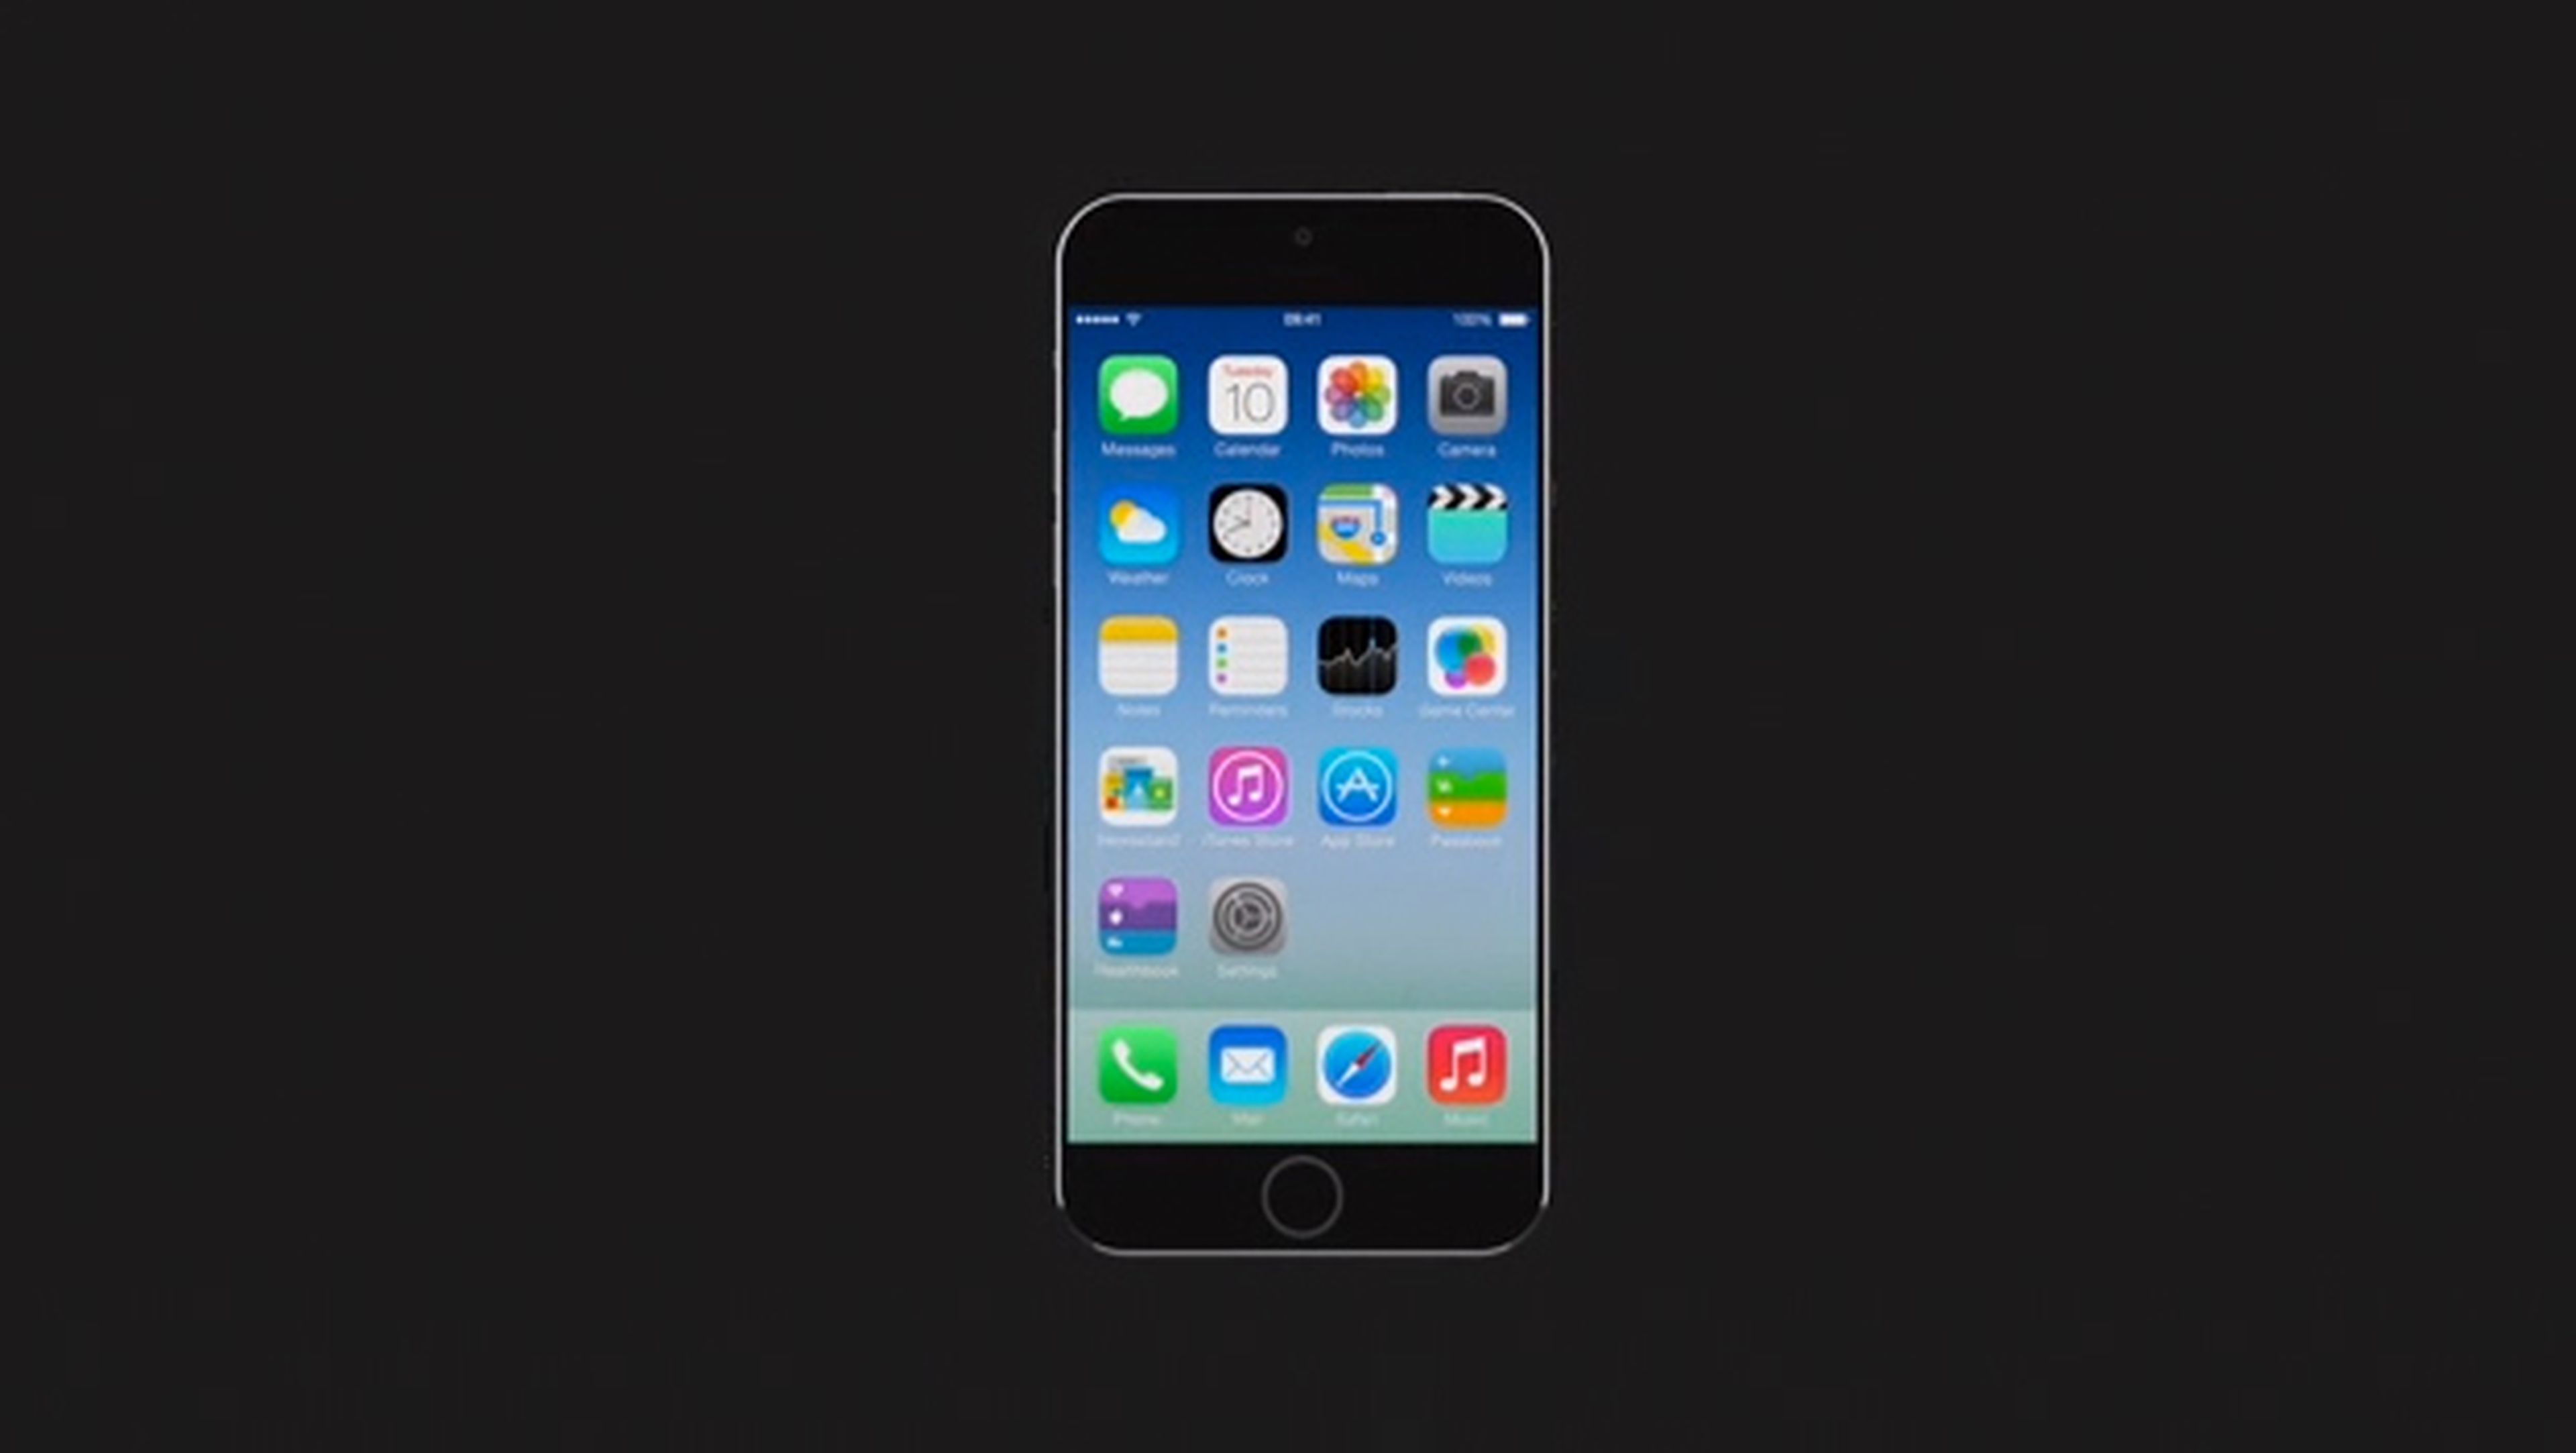 iPhone Air, el concepto de iPhone 6 de Sam Beckett